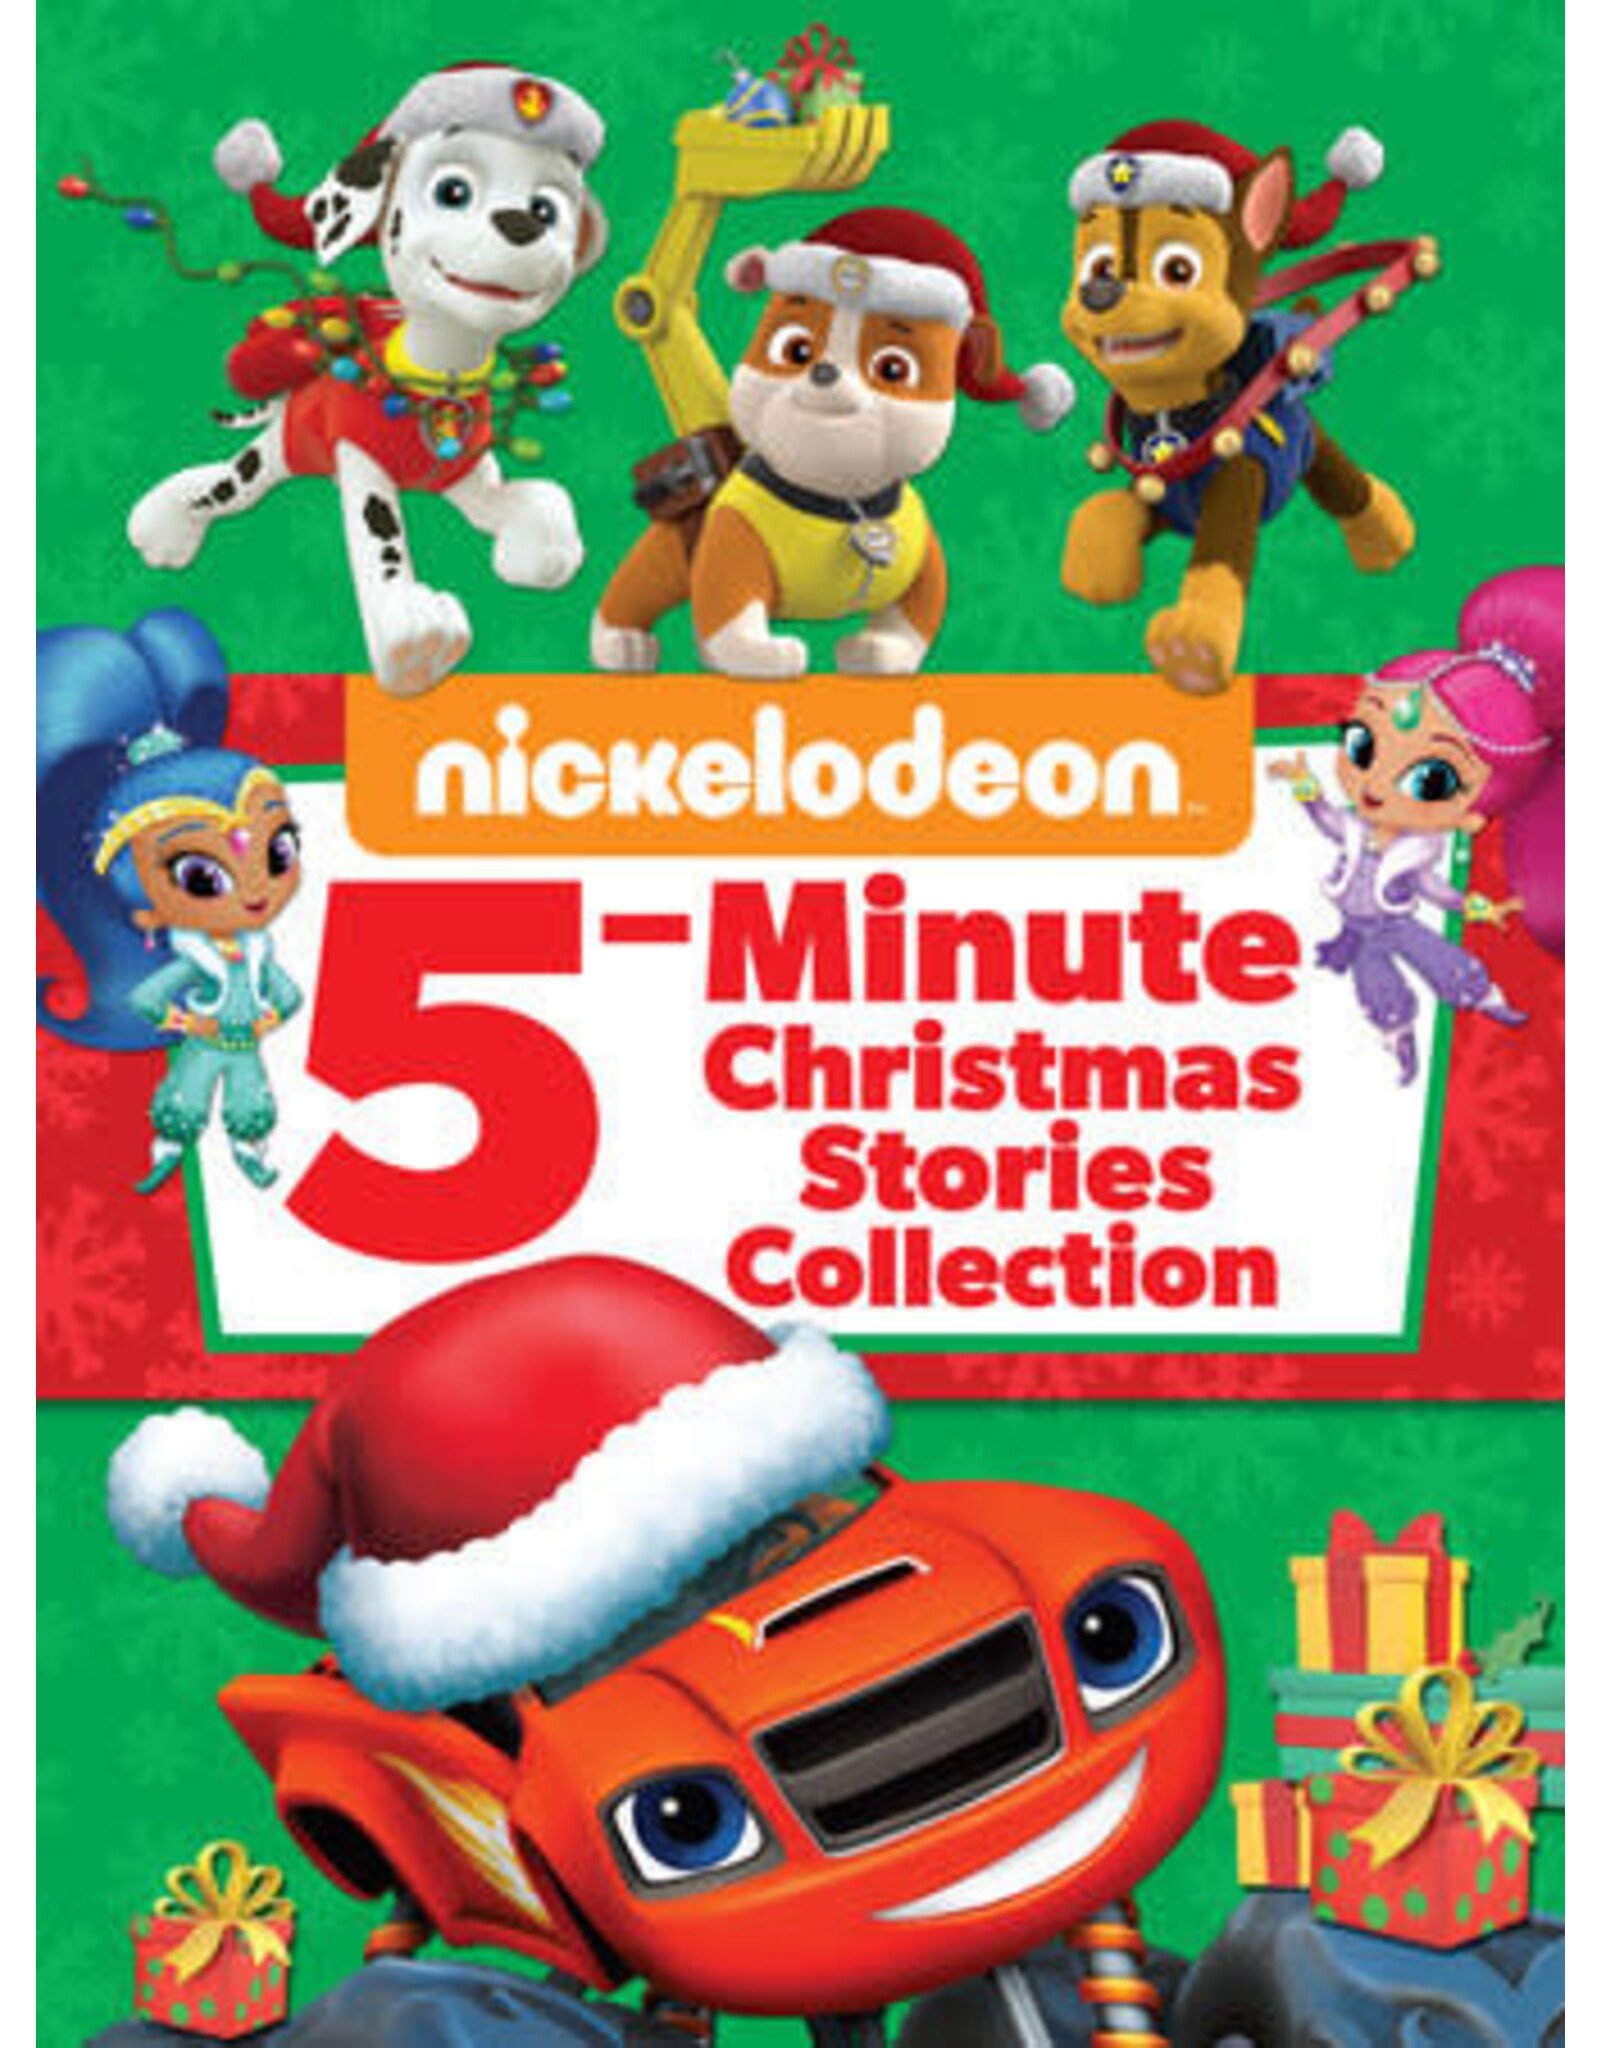 Nickelodeon 5-Minute Christmas Stories (Nickelodeon)